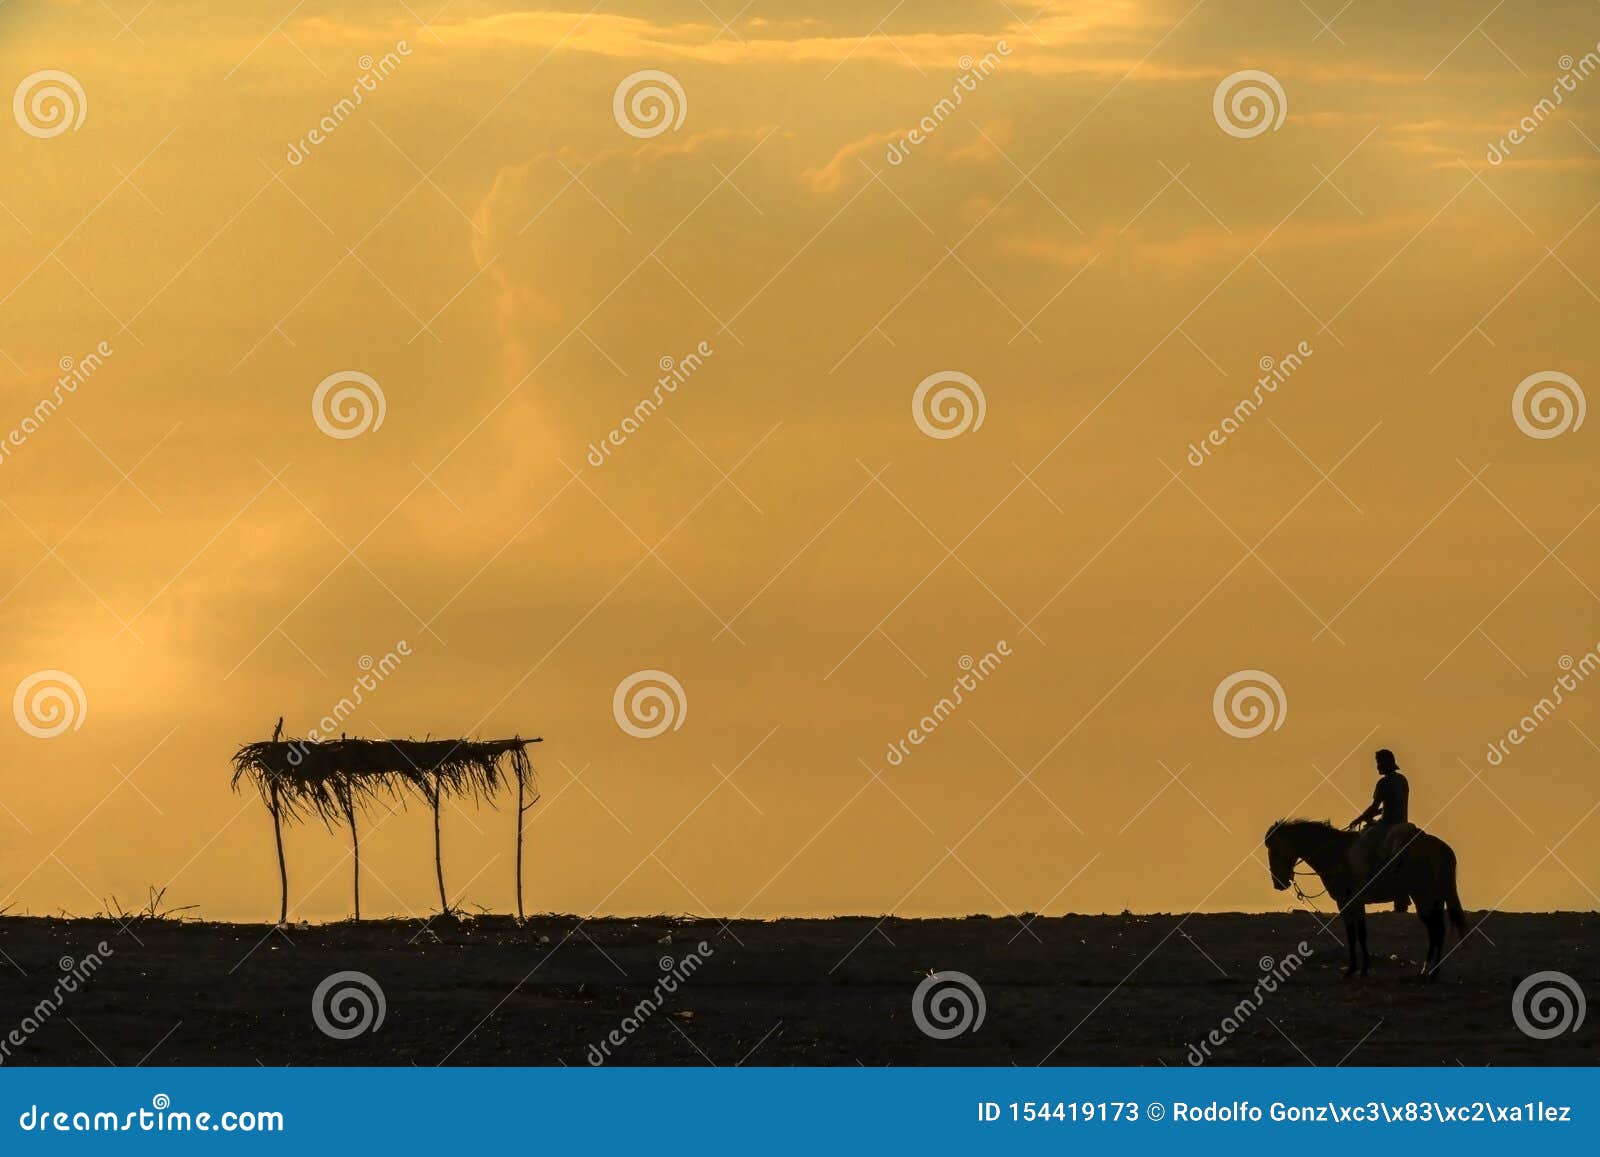 sunset palapa rider and horse atardecer la palapa  jinete y caballo. 